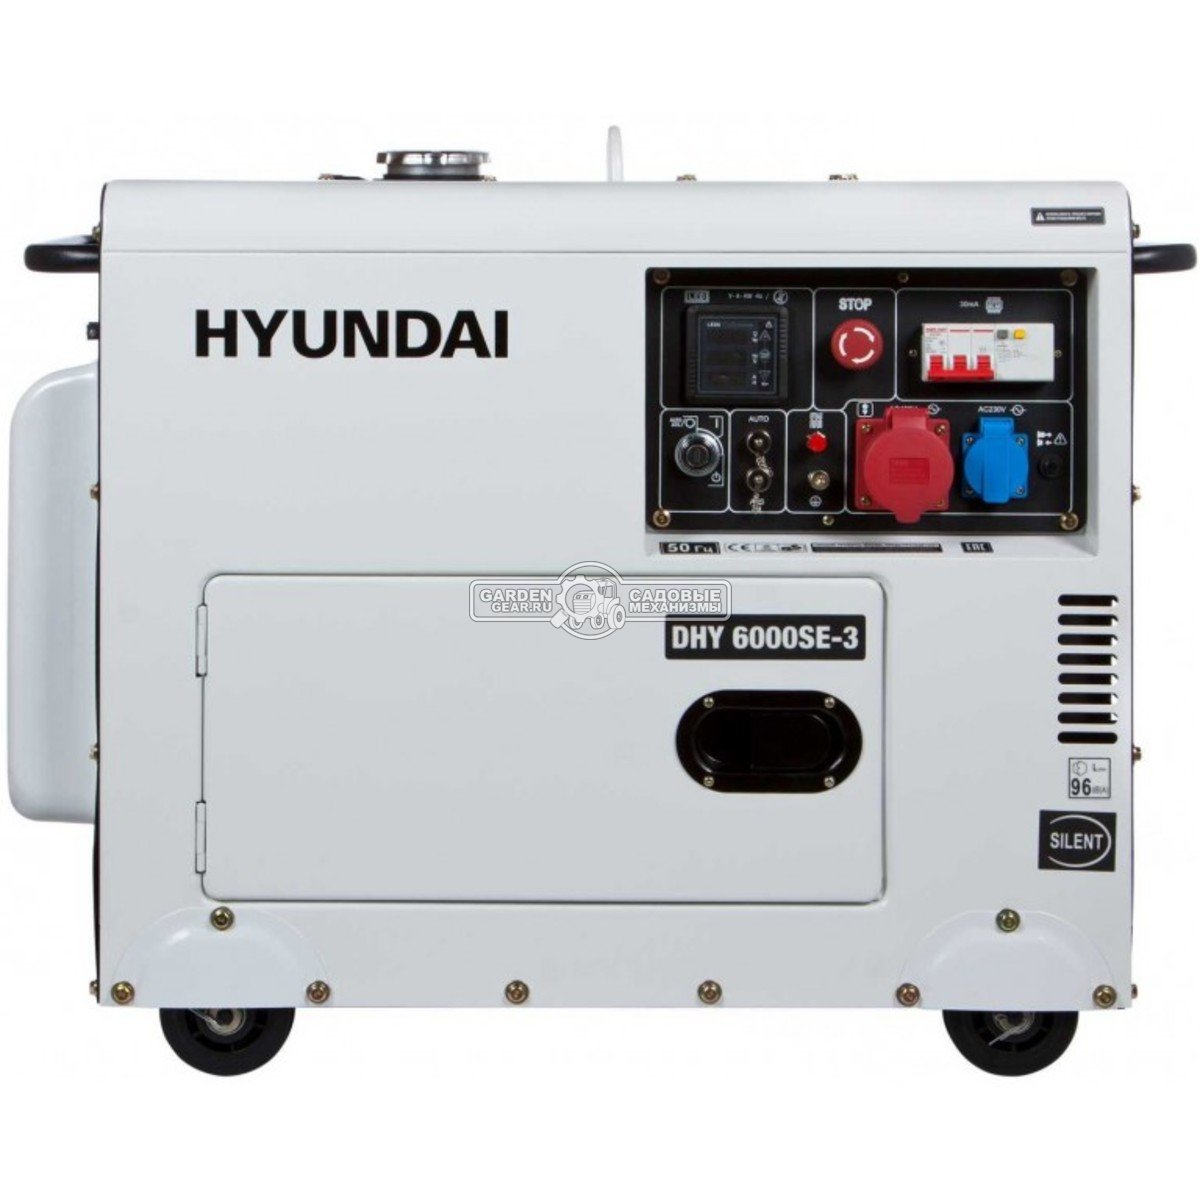 Дизельный генератор Hyundai DHY 6000SE-3 трехфазный в защитном кожухе (PRC, Hyundai, 418 см3, 5/5.5 кВт, 15 л, электростартер, комплект колёс 164 кг)